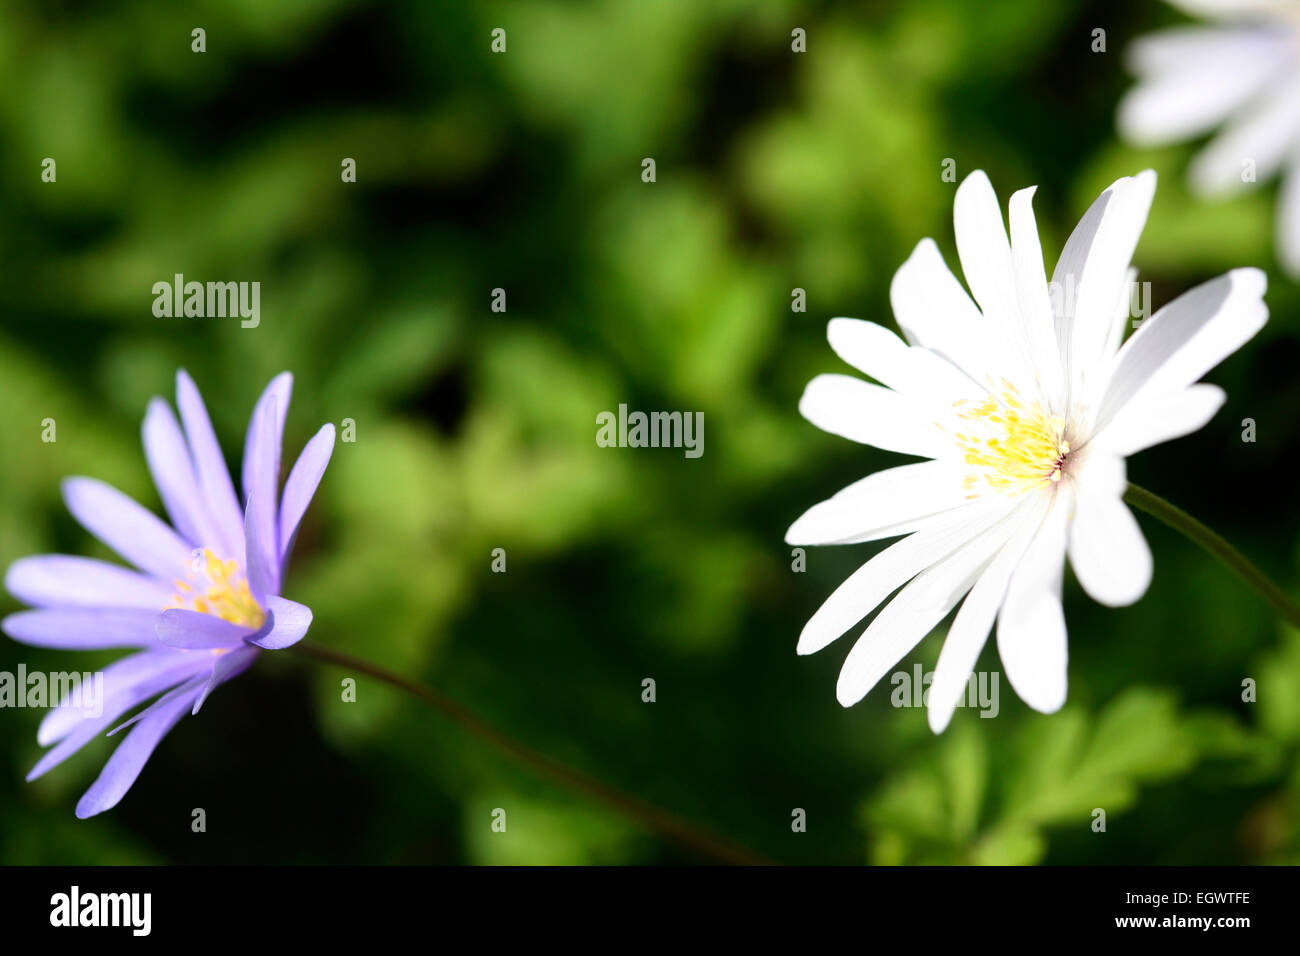 Frühe Blüte Anemone Apenninen weiß und blau, Blumen schöner Daisy-wie Frühling Jane Ann Butler Fotografie JABP740 Stockfoto